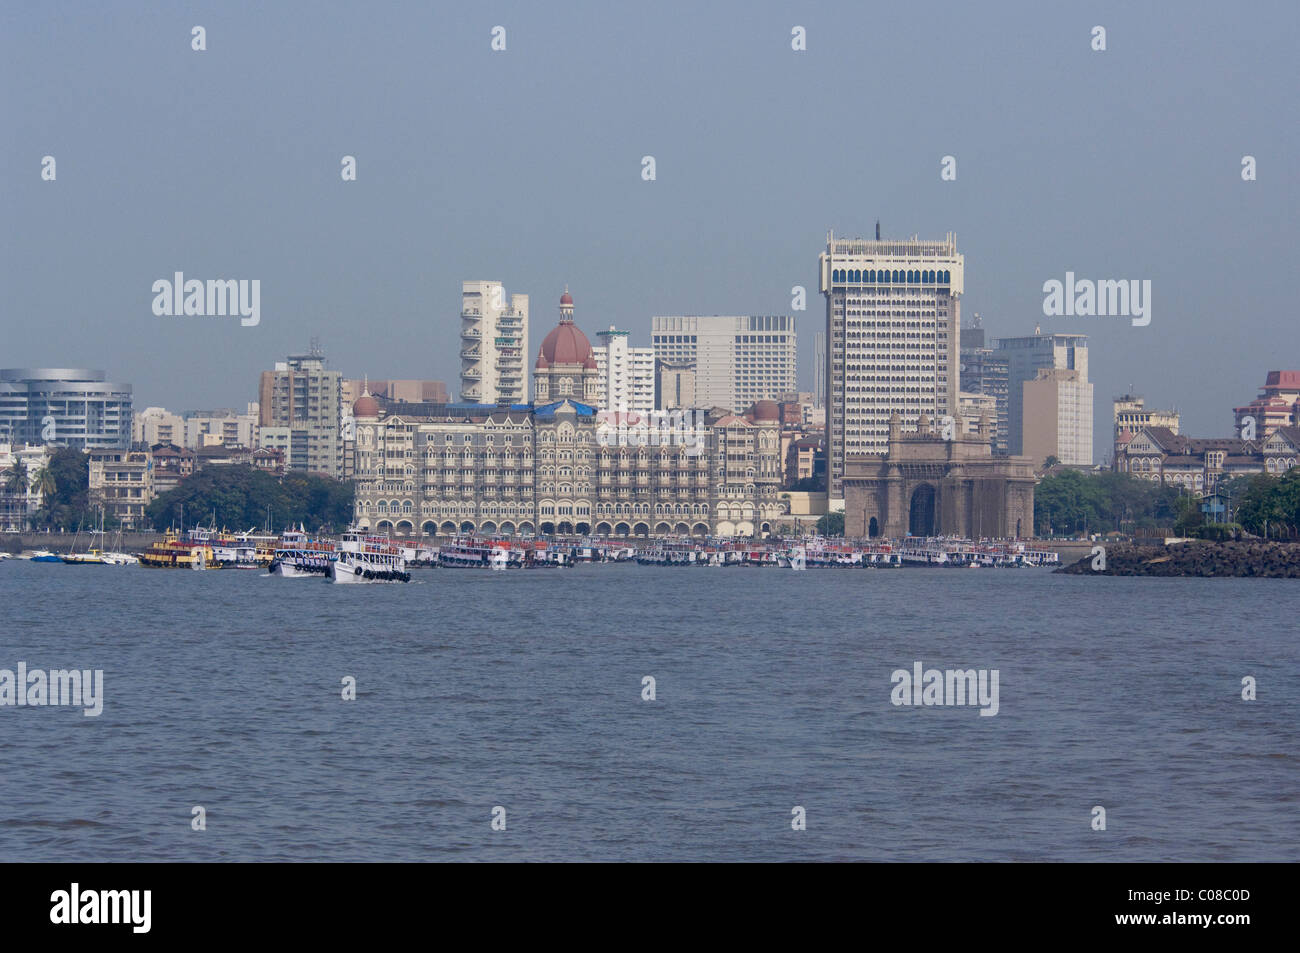 India, state of Maharashtra, Mumbai (aka Bombay). Waterfront area of Mumbai, historic Taj Mahal Hotel. Stock Photo